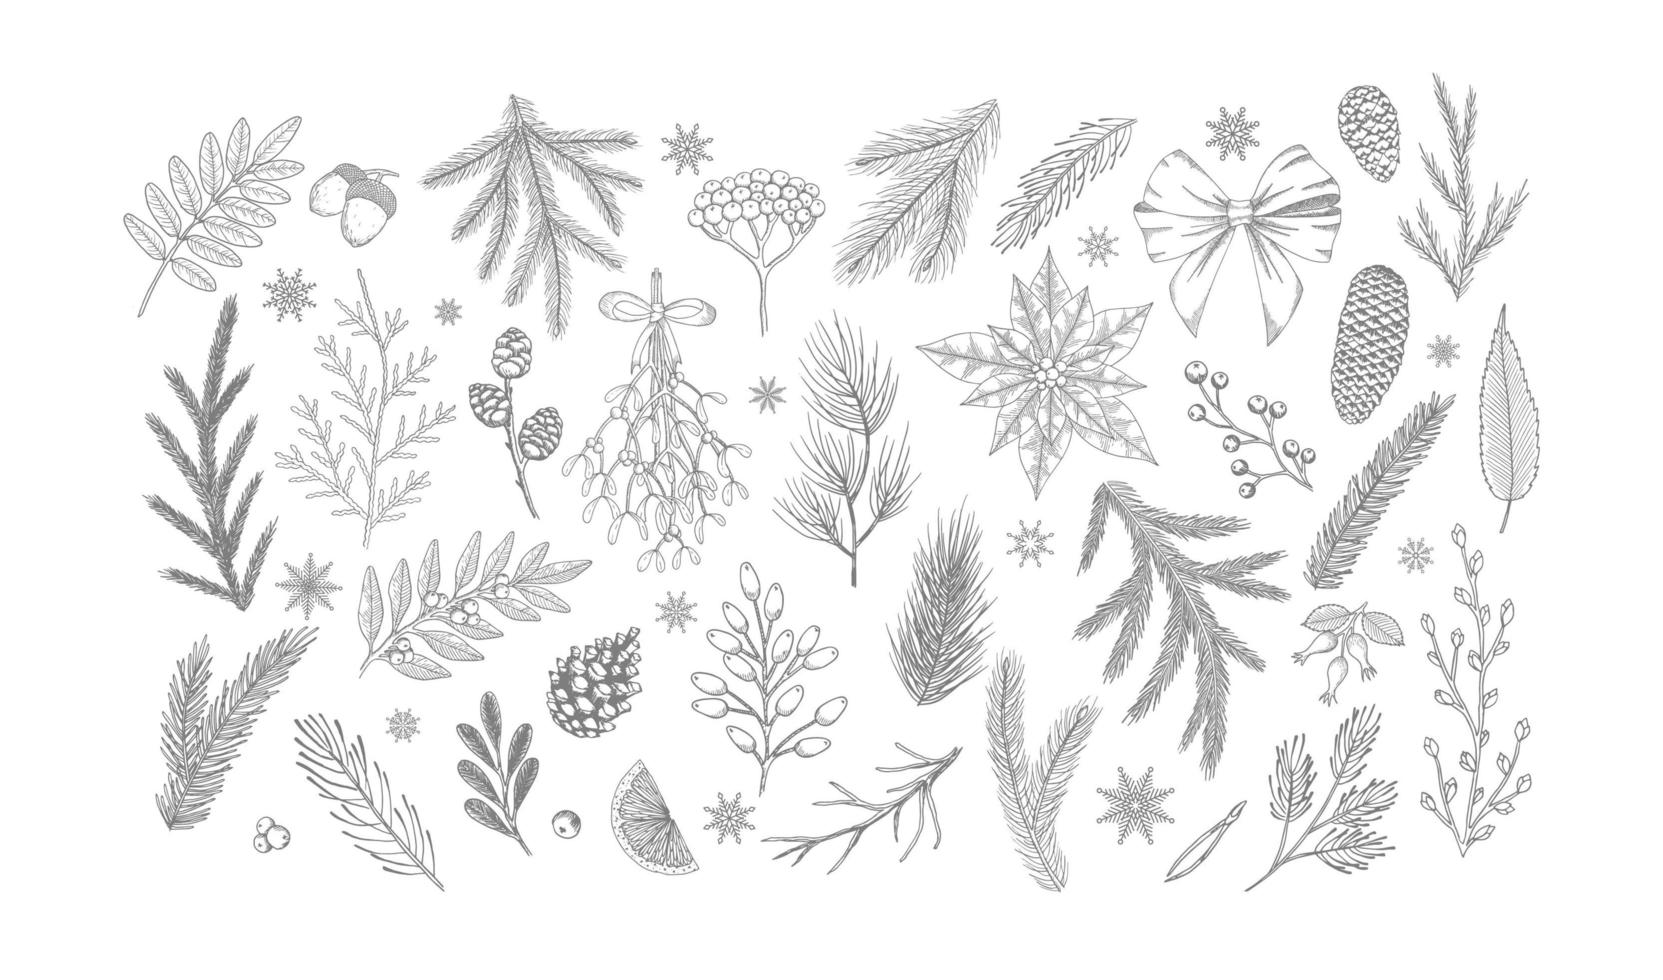 Stellen Sie Weihnachtsvektorpflanzen, Stechpalmenbeere, Weihnachtsbaum, Kiefer, Blätter, Niederlassungen, Feiertagsdekoration lokalisiert auf weißem Hintergrund ein. vektor